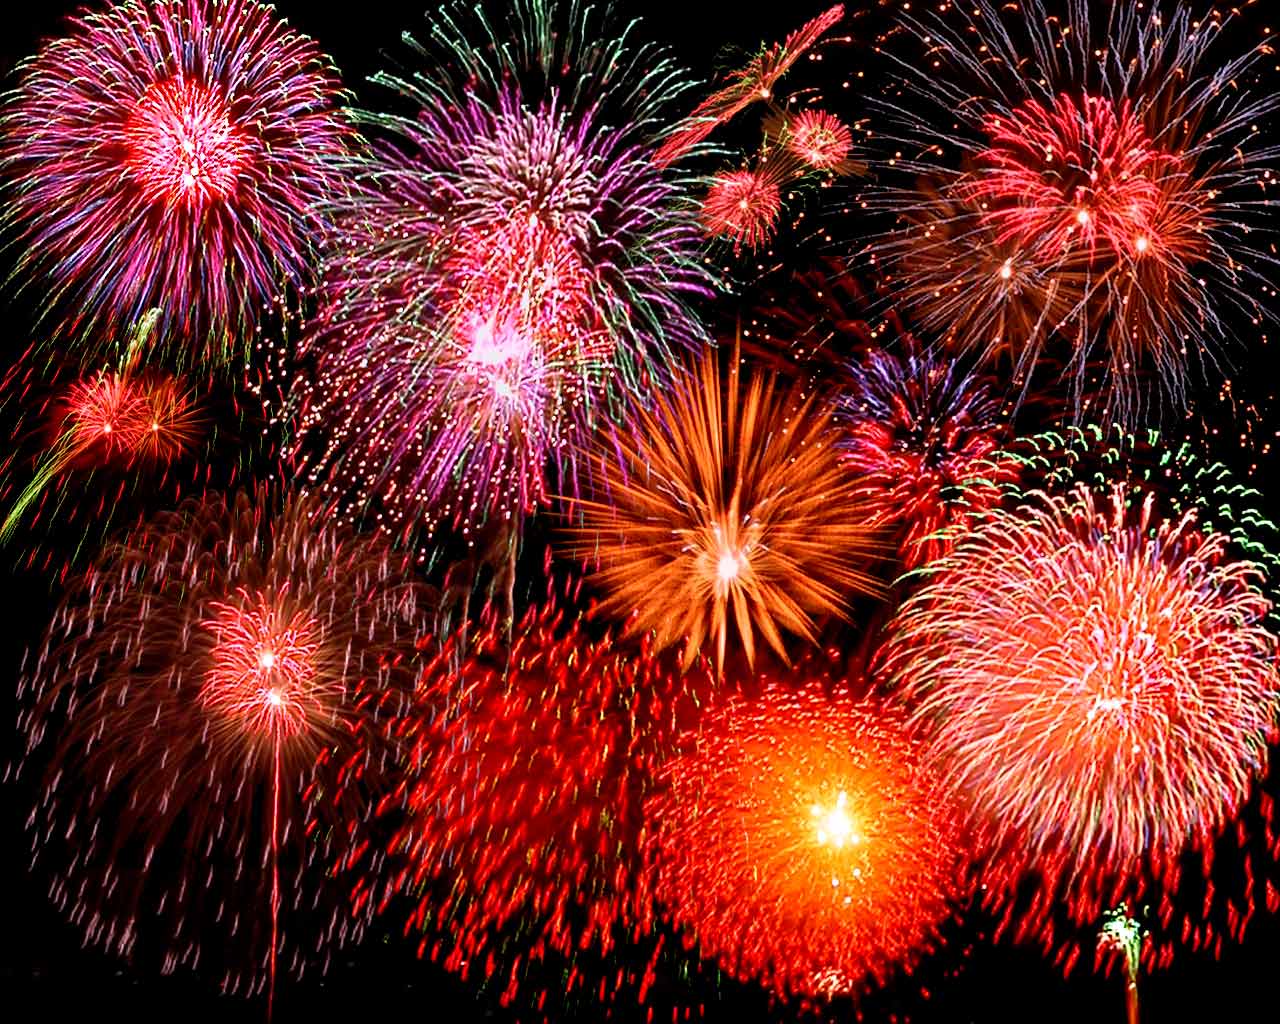 http://2.bp.blogspot.com/-vWQMr9FoIZ8/Tpa9O51Z3dI/AAAAAAAAA6o/tNcrasfeCpg/s1600/fireworks.jpg